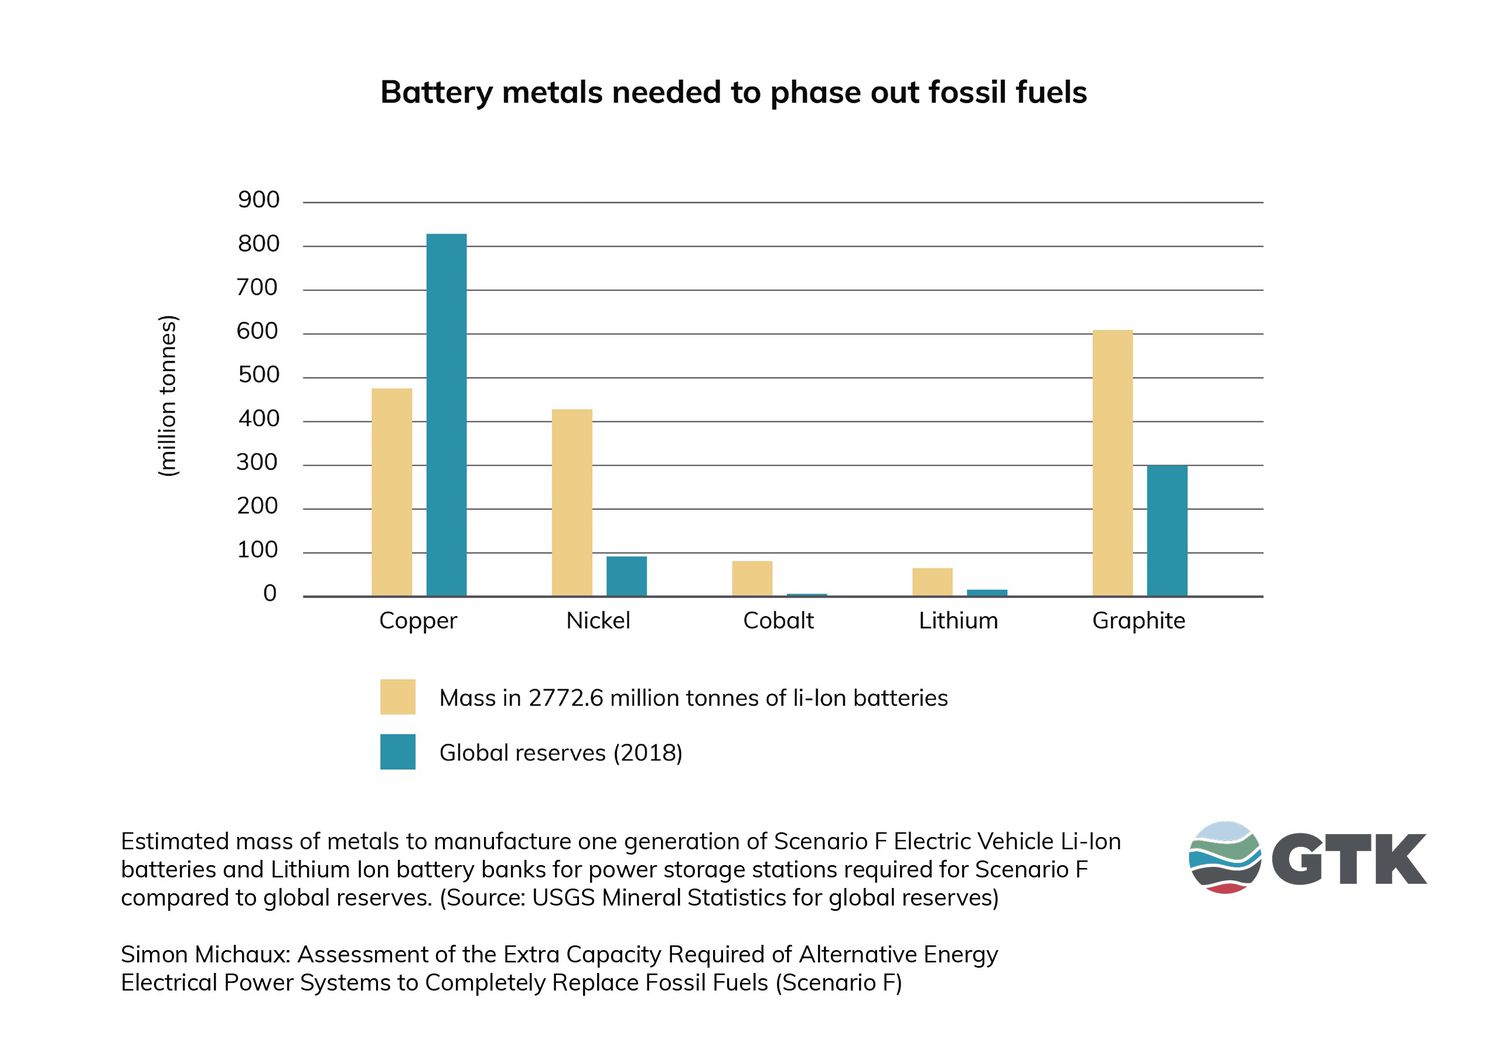 电池金属需要逐步淘汰化石燃料